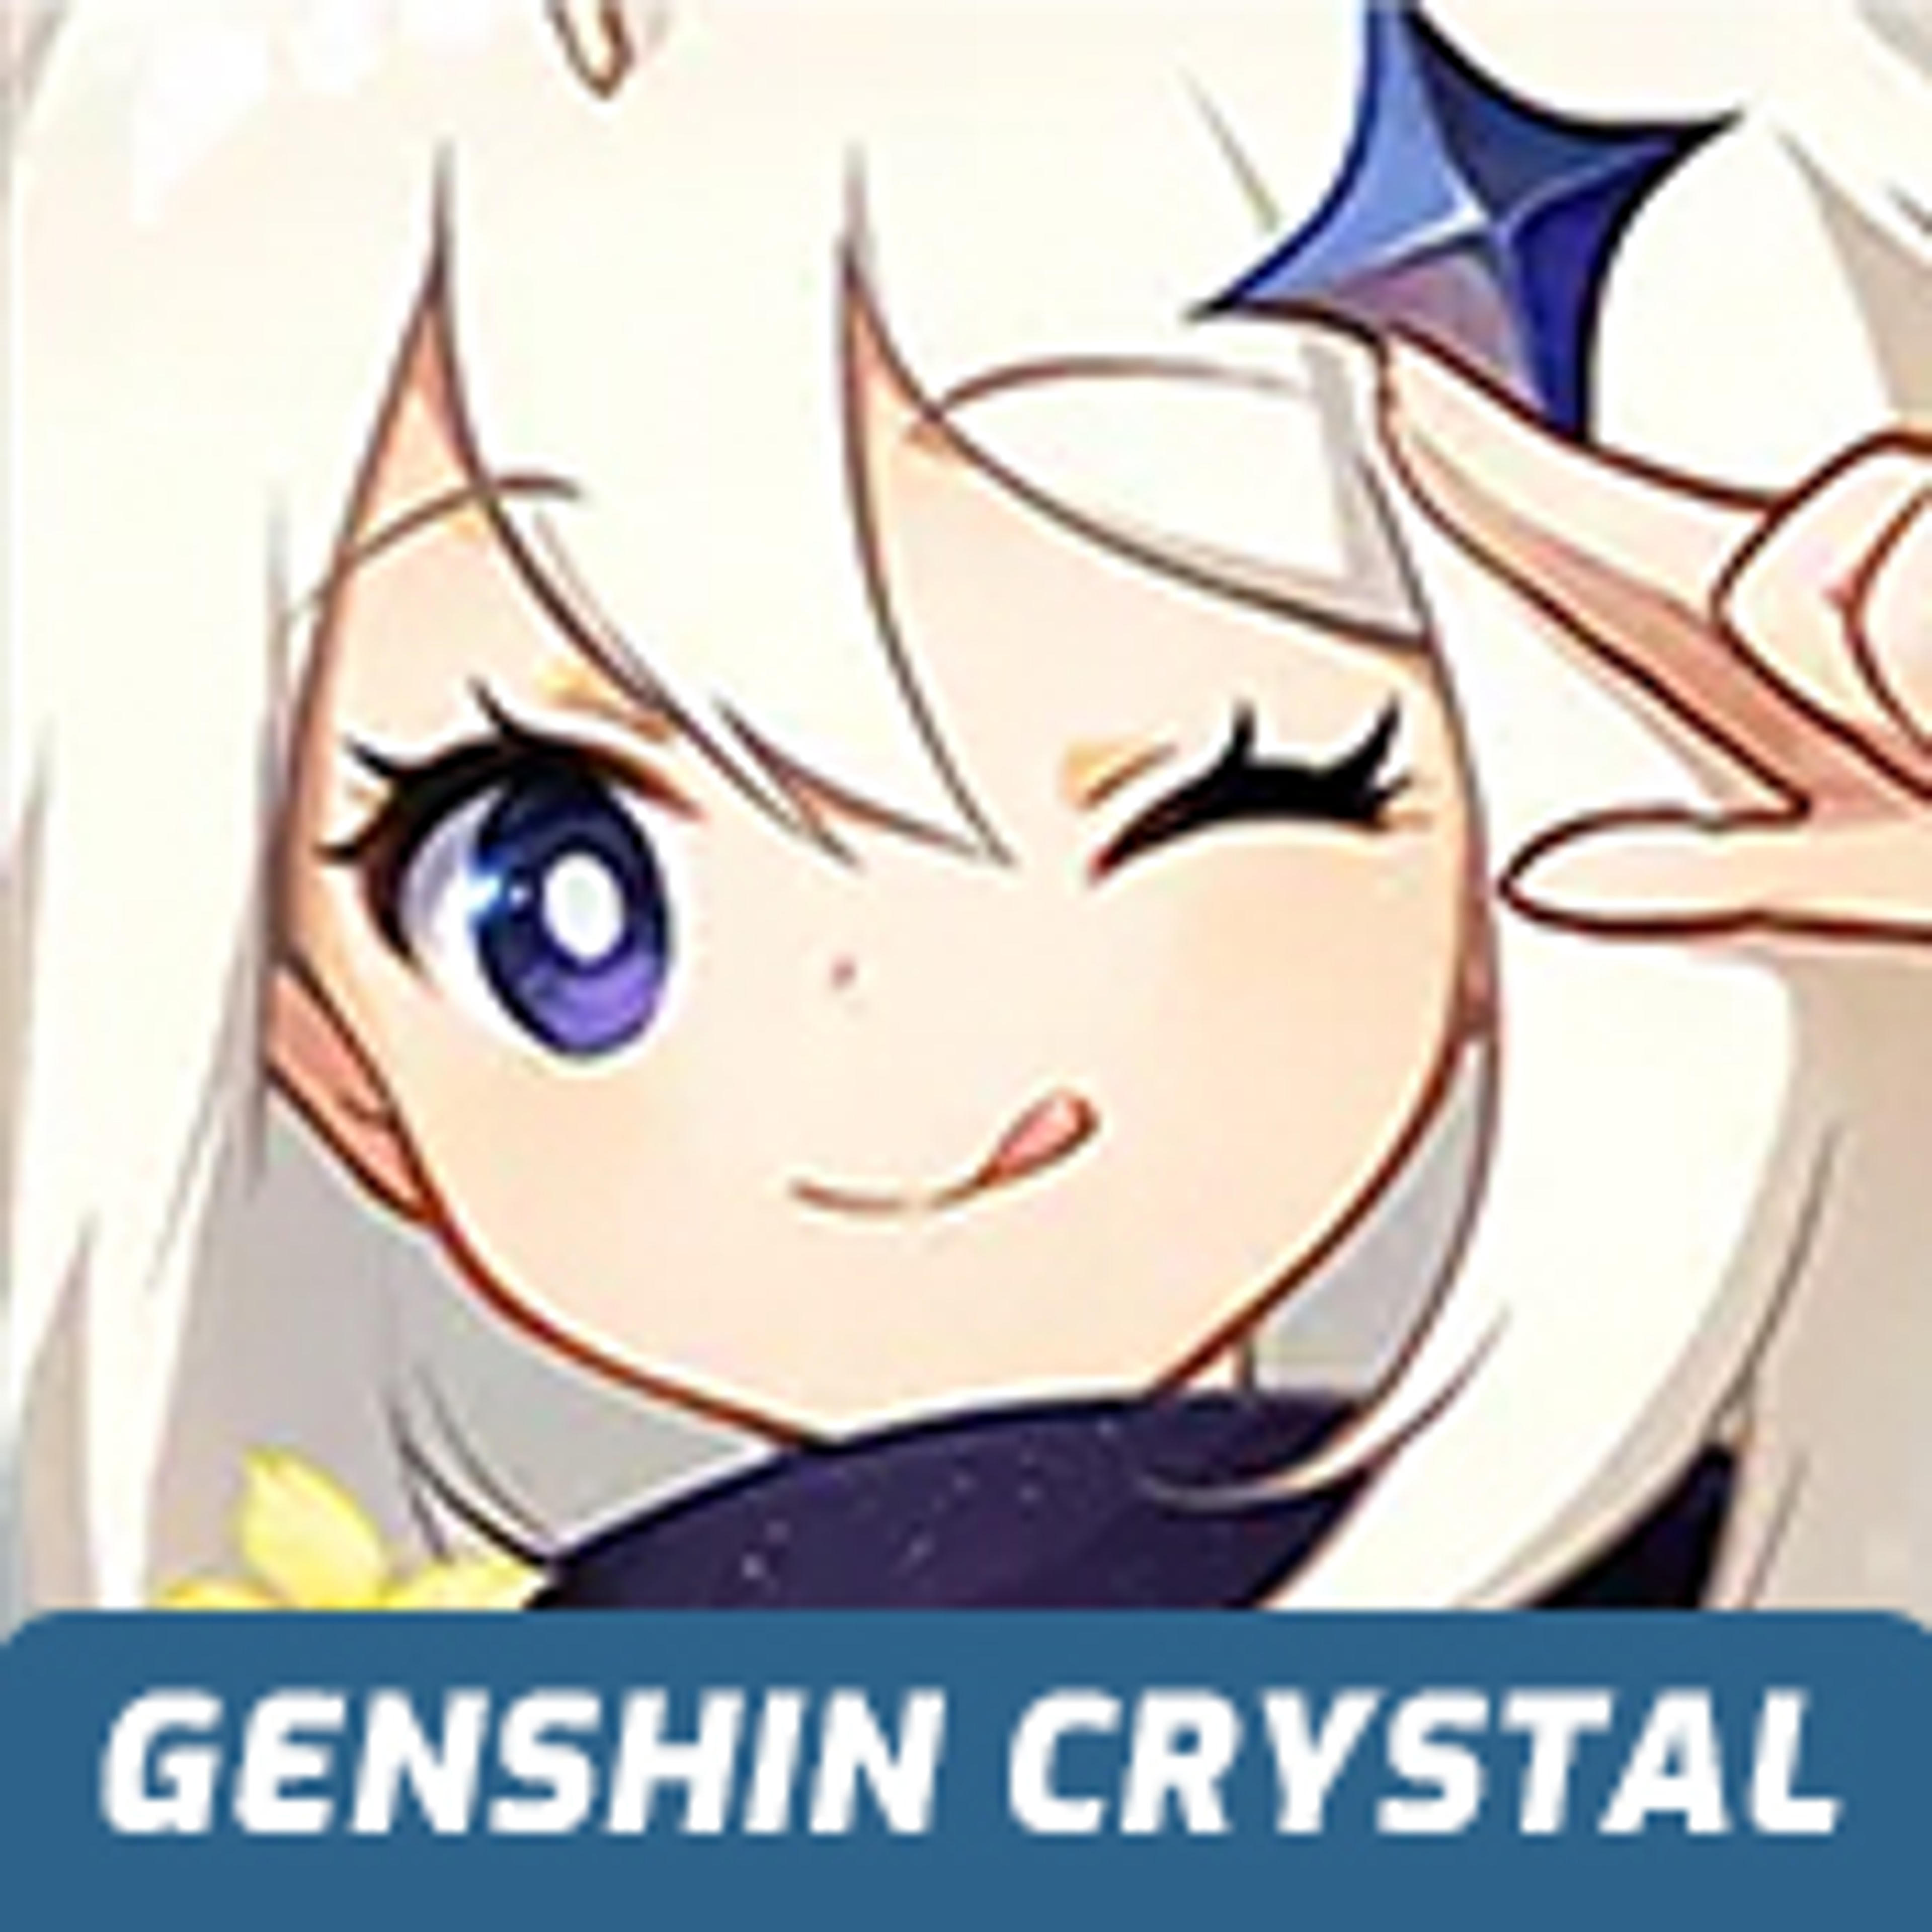 Genshin Crystal